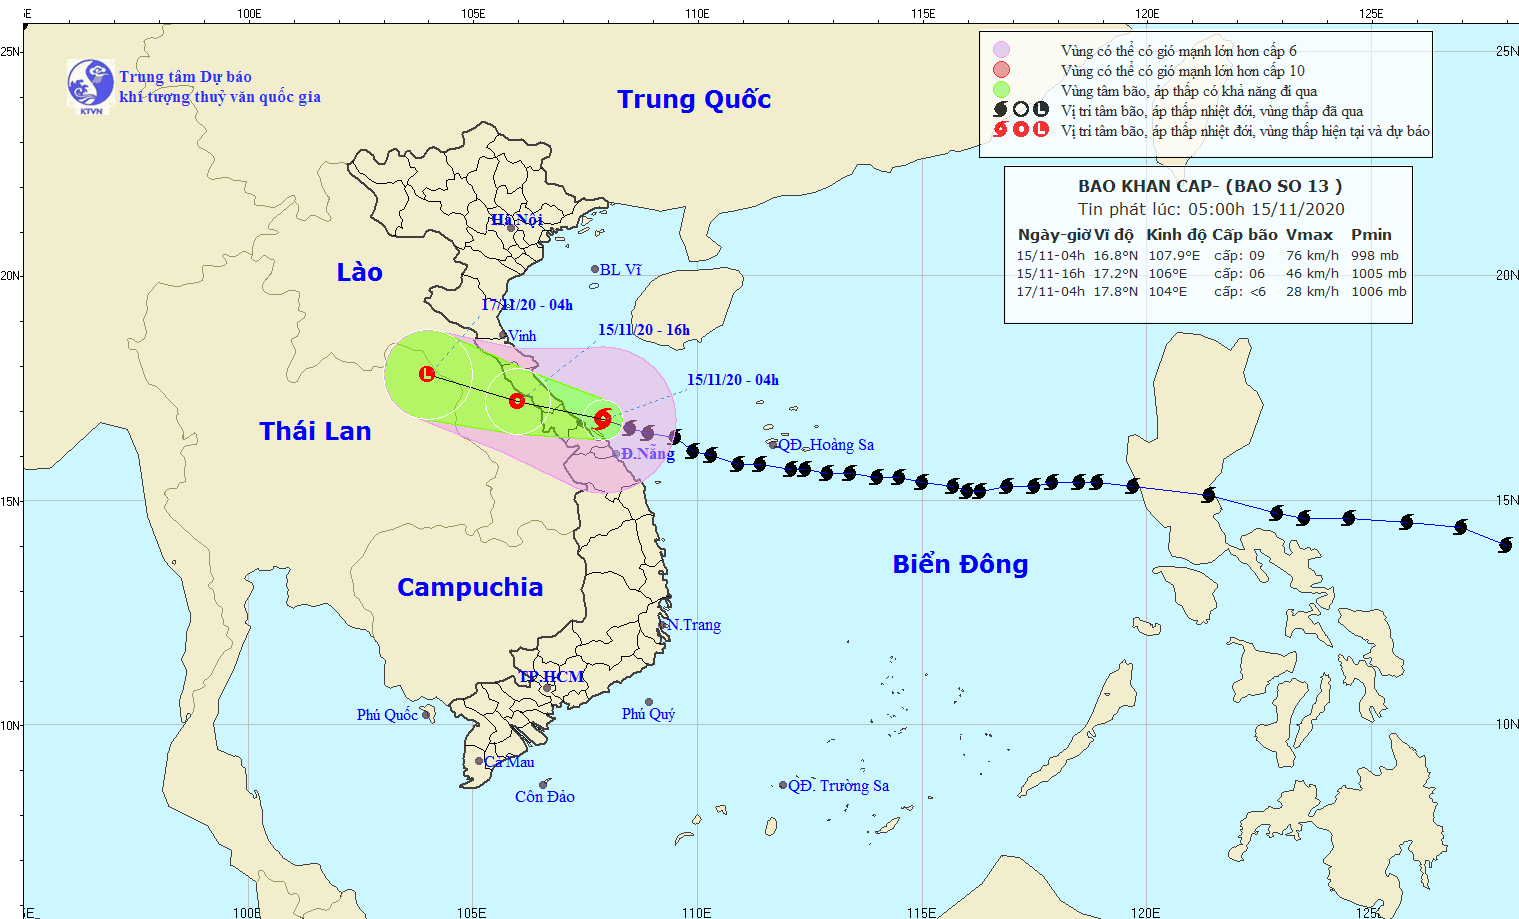 Cập nhật thông tin mới nhất về bão số 13: Sức gió mạnh nhất cấp 8-9, giật cấp 11, đi vào đất liền các tỉnh từ Hà Tĩnh đến Thừa Thiên Huế